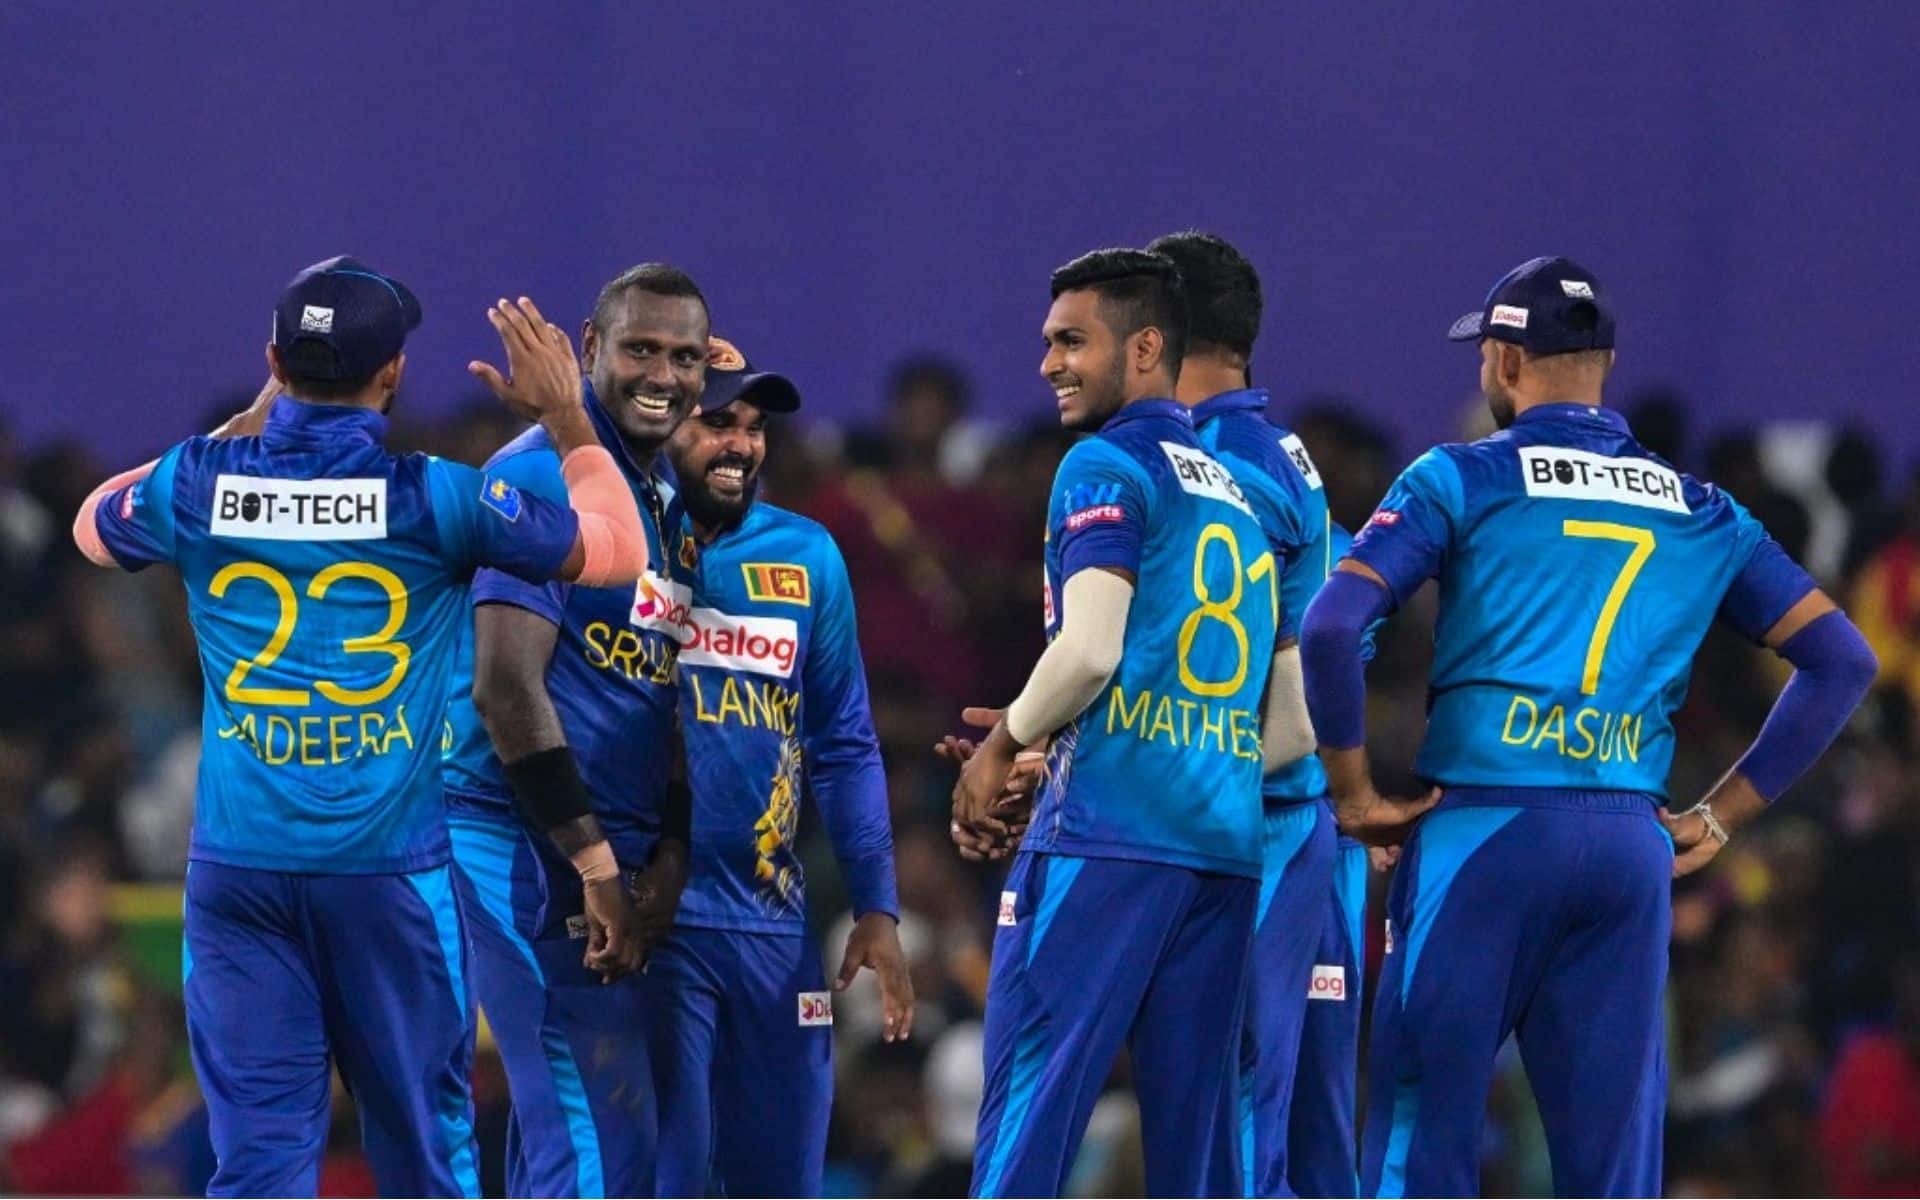 Sri Lanka ostatni raz wygrała Puchar Świata T20 dziesięć lat temu w 2014 roku (x.com_